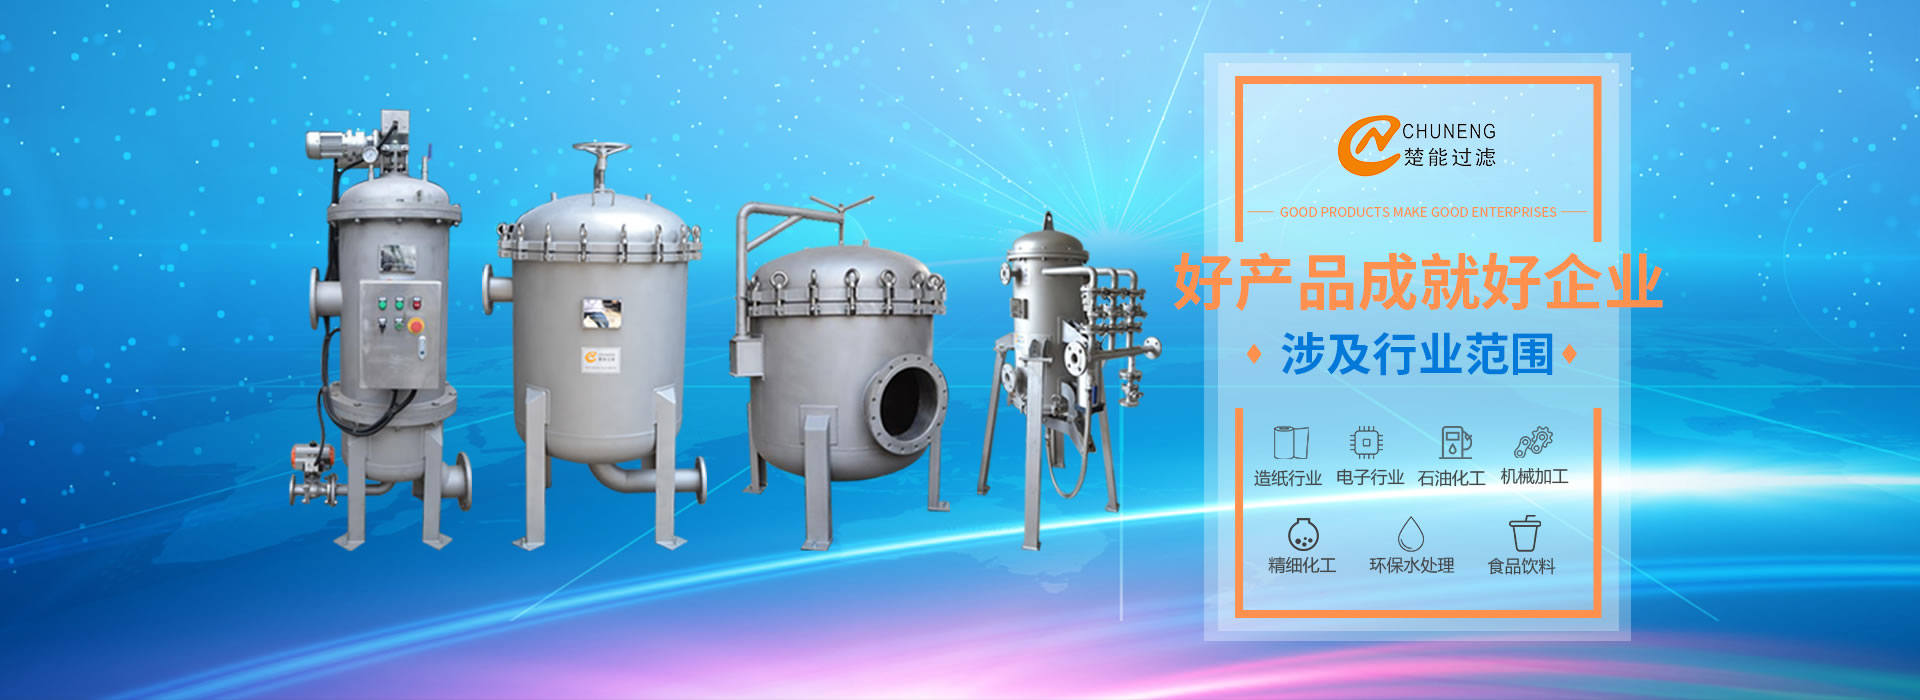 上海楚能工业过滤系统有限公司是集研发、制造、销售/服务于一体的过滤设备与过滤元件专业生产厂家